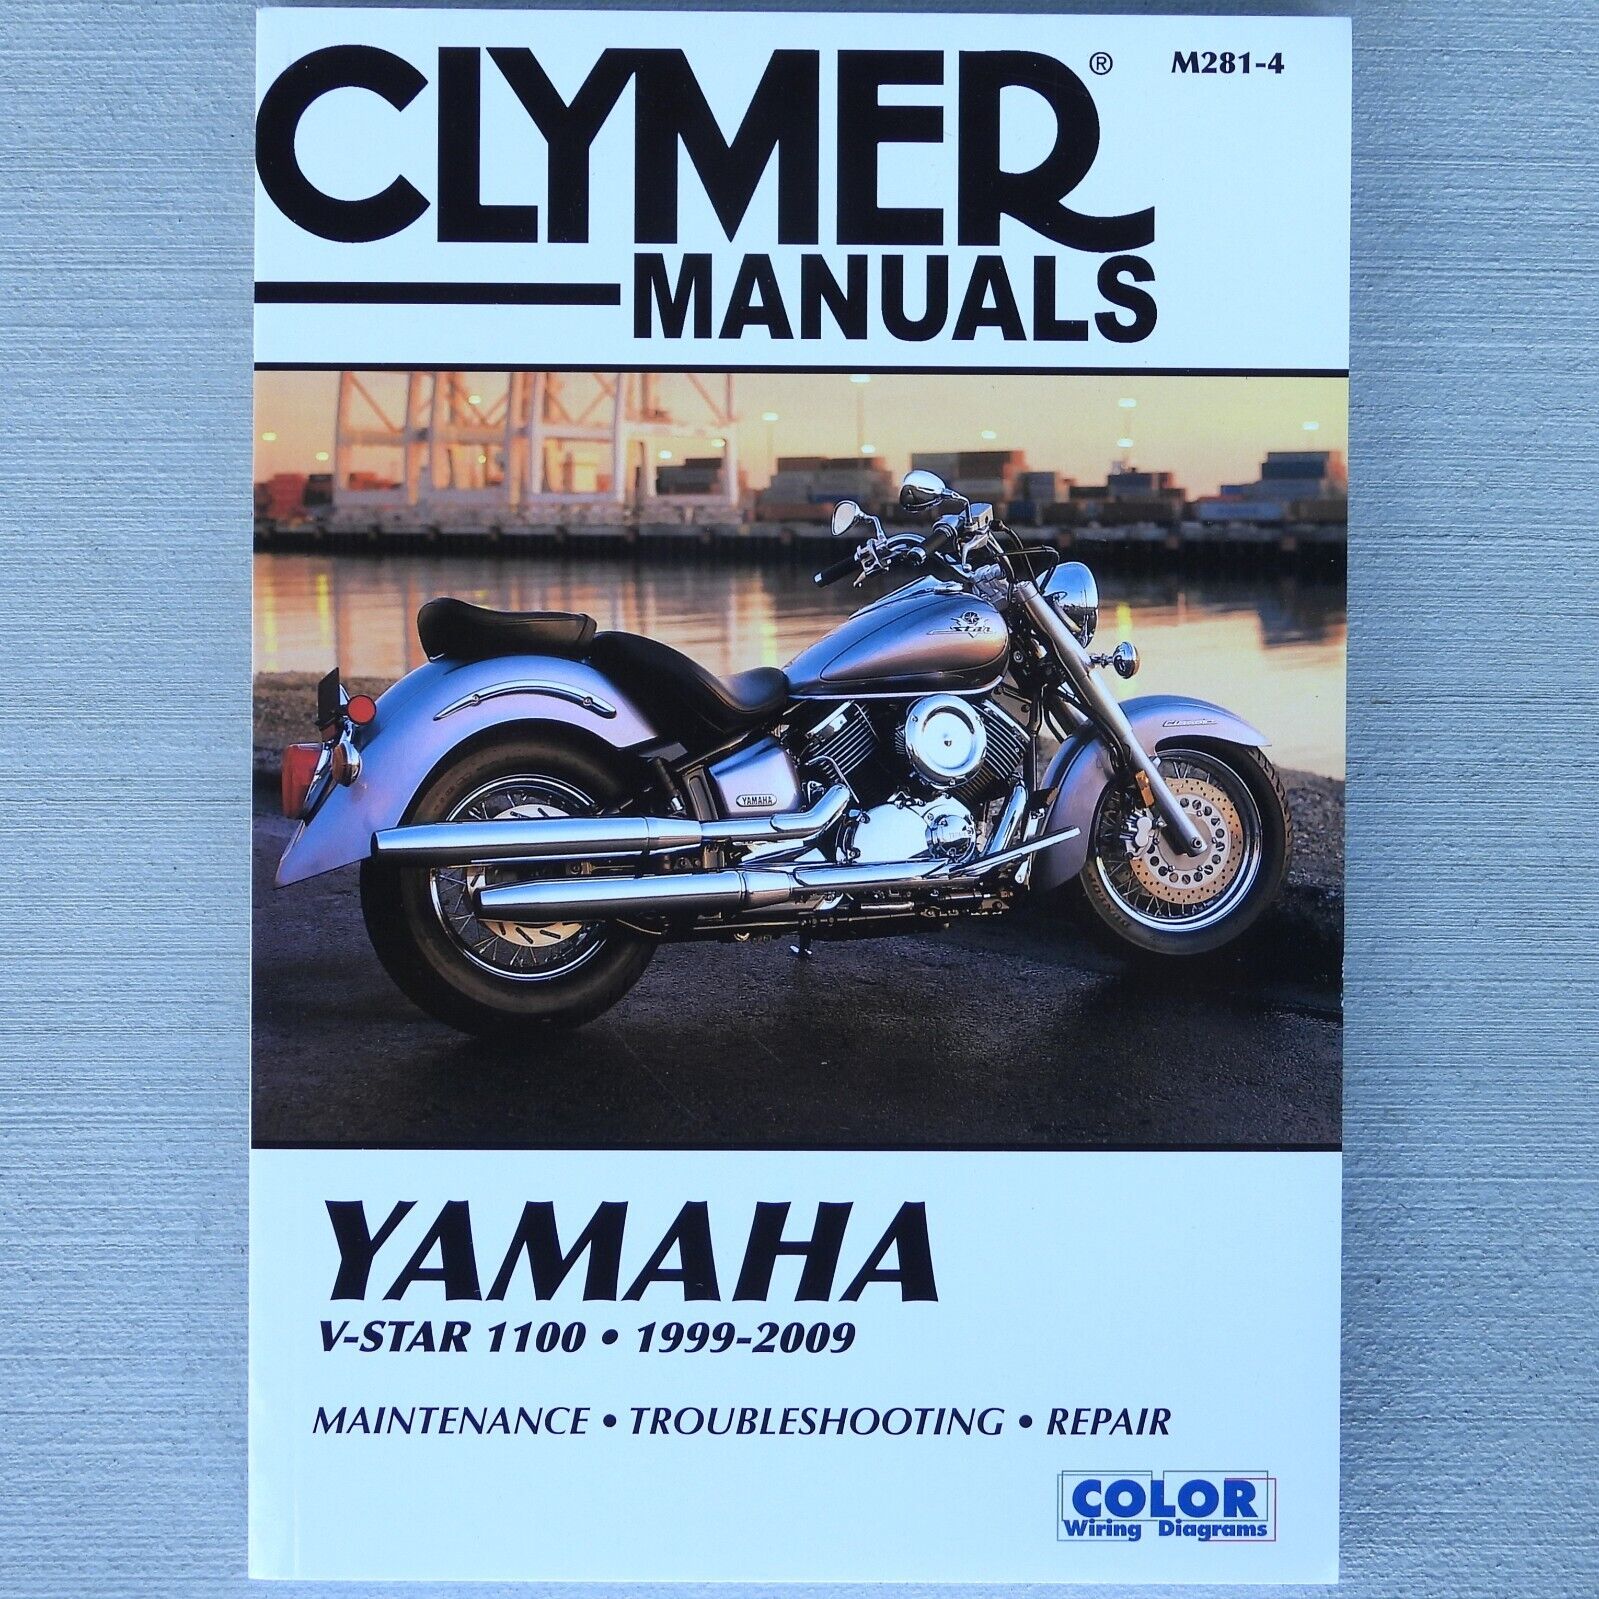 1999-2009 Yamaha VStar V-Star 1100 CLYMER REPAIR MANUAL M281